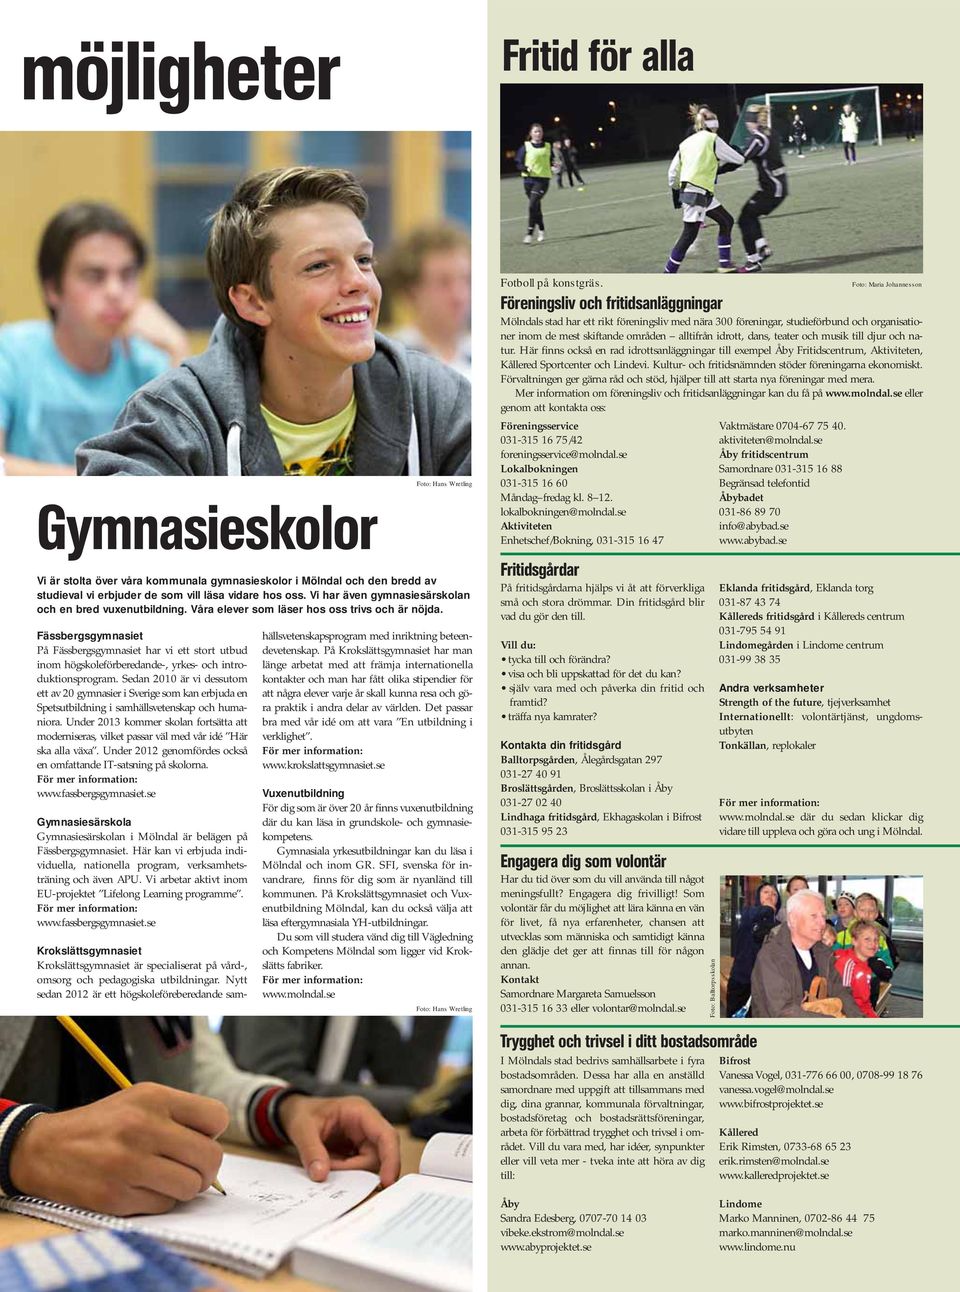 Fässbergsgymnasiet På Fässbergsgymnasiet har vi ett stort utbud inom högskoleförberedande-, yrkes- och introduktionsprogram.